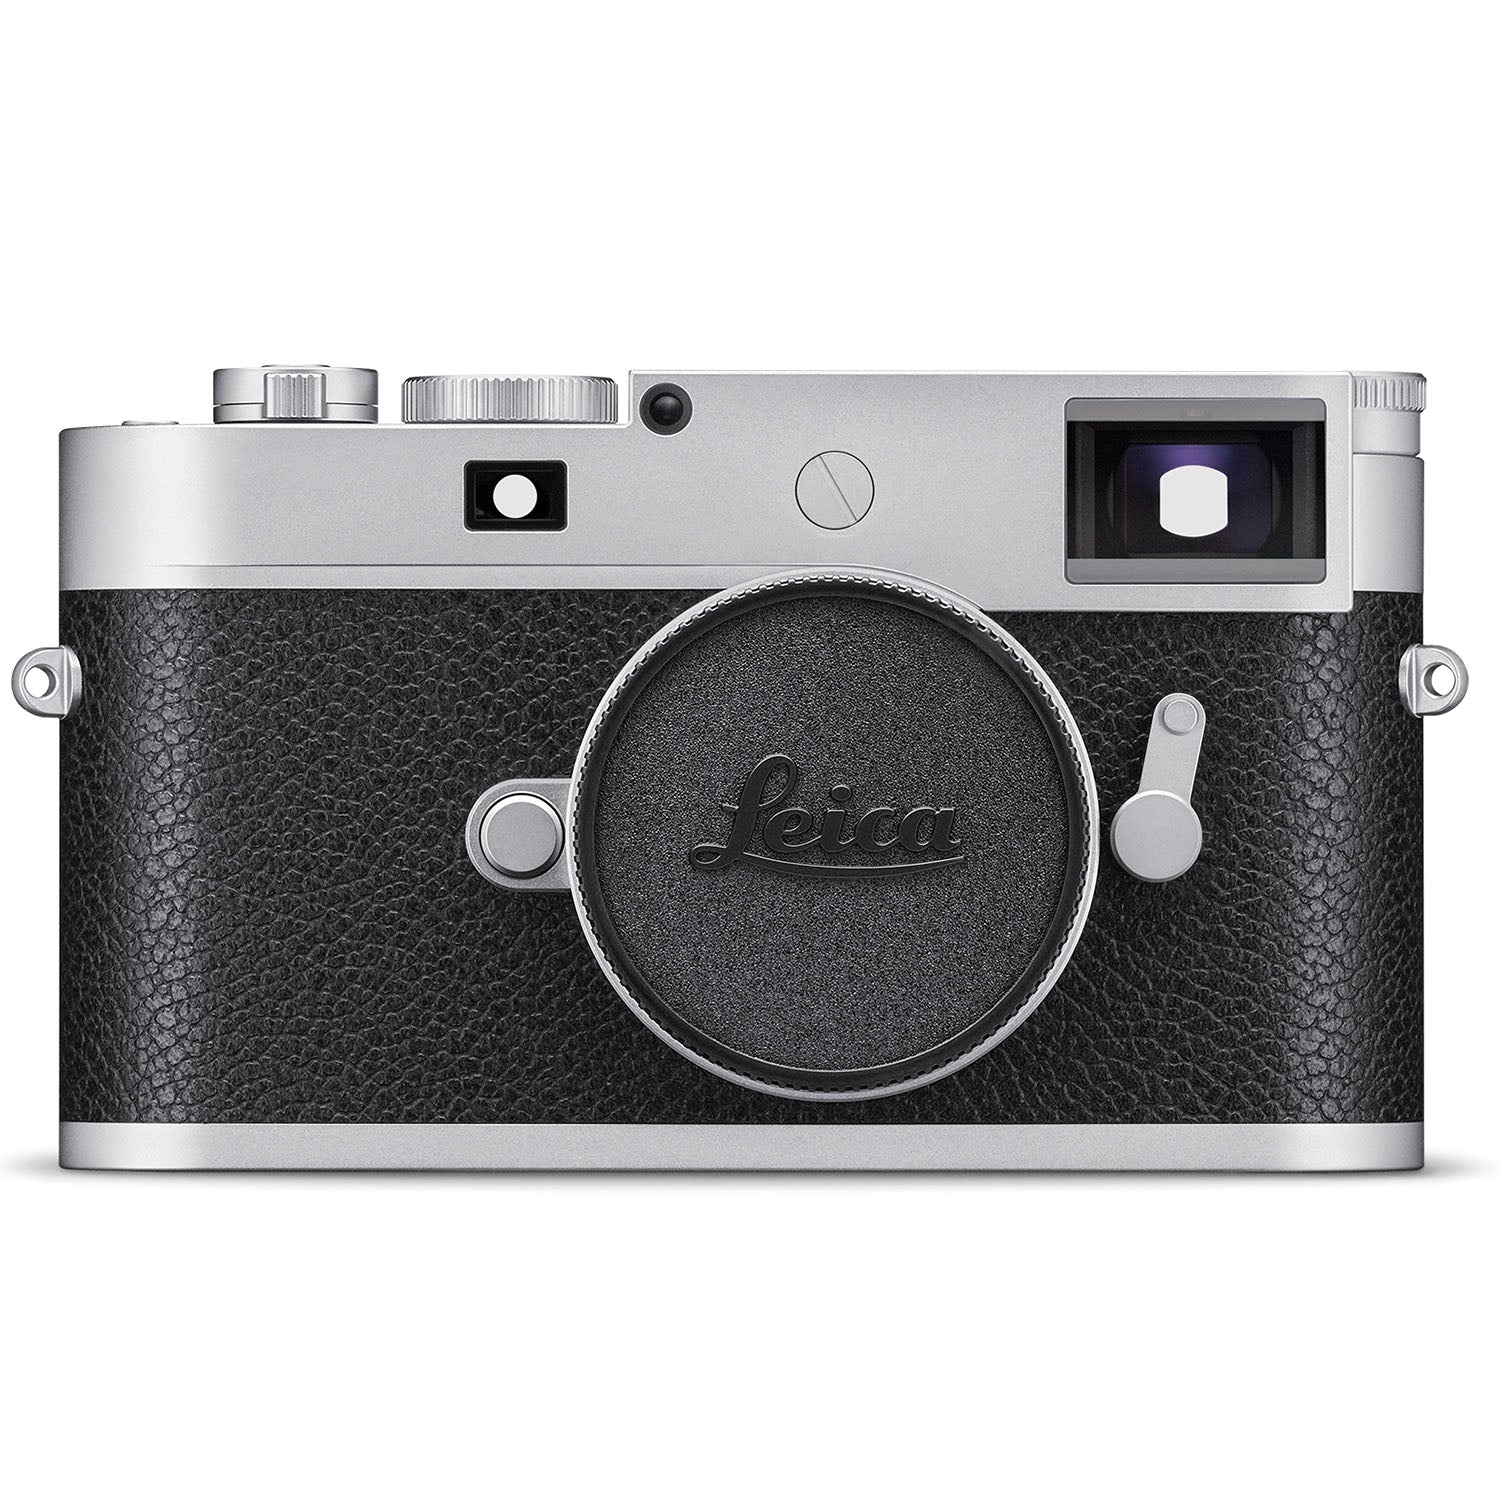 Leica M11-P Digital Rangefinder